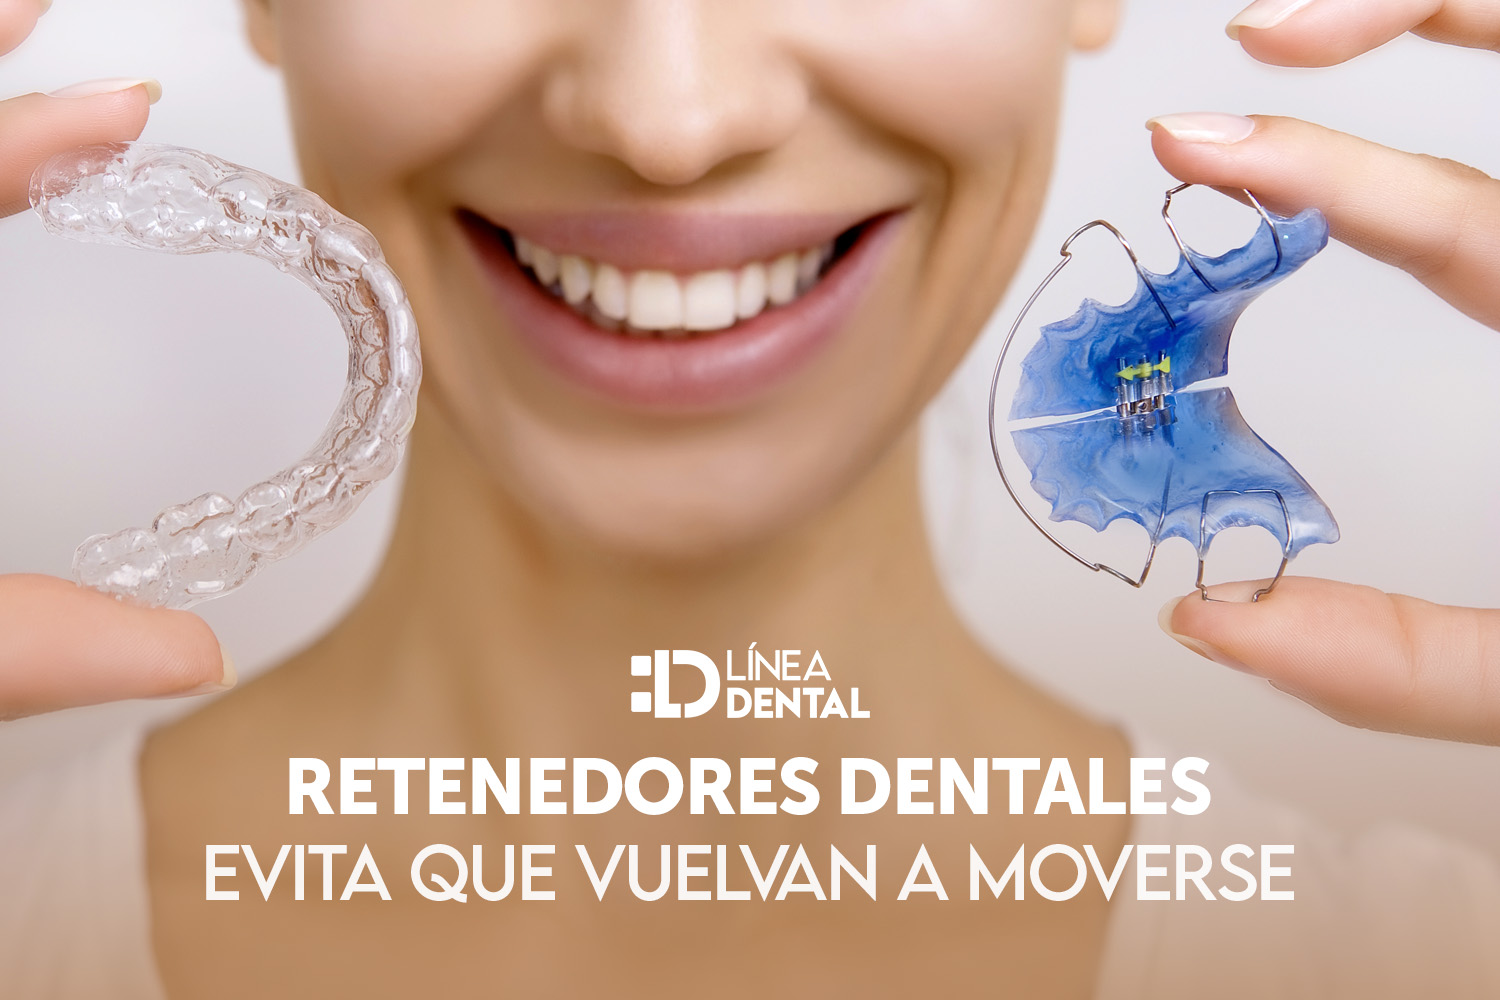 01-retenedores-dentales-dentista-odontologo-linea-dental-ciudad-real-miguelturra